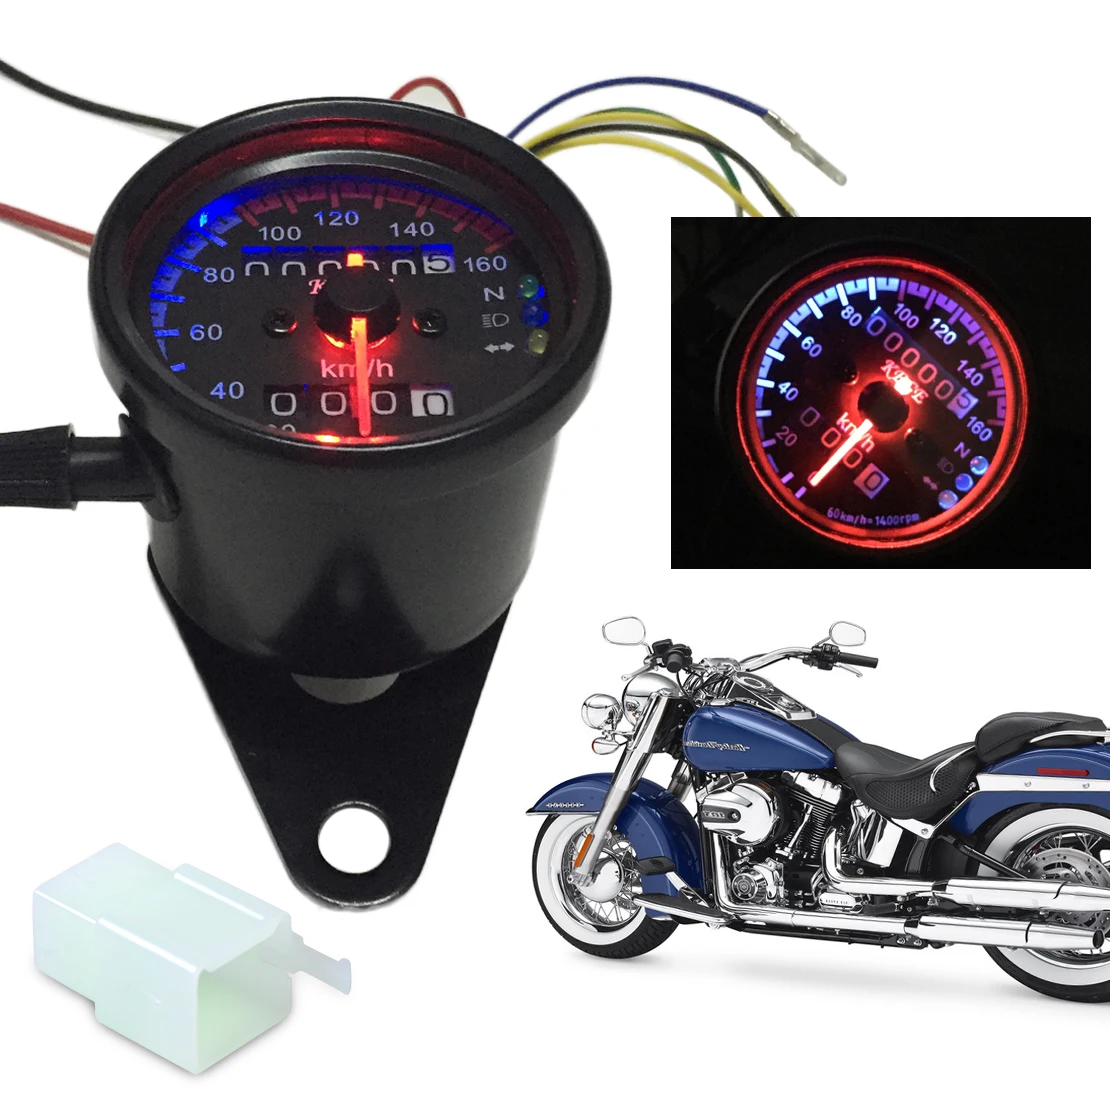 Dwcx мотоциклетный одометр со световыми индикаторами спидометр датчик с индикатором сброса света переключатель для Honda Yamaha Harley Bobber Chopper